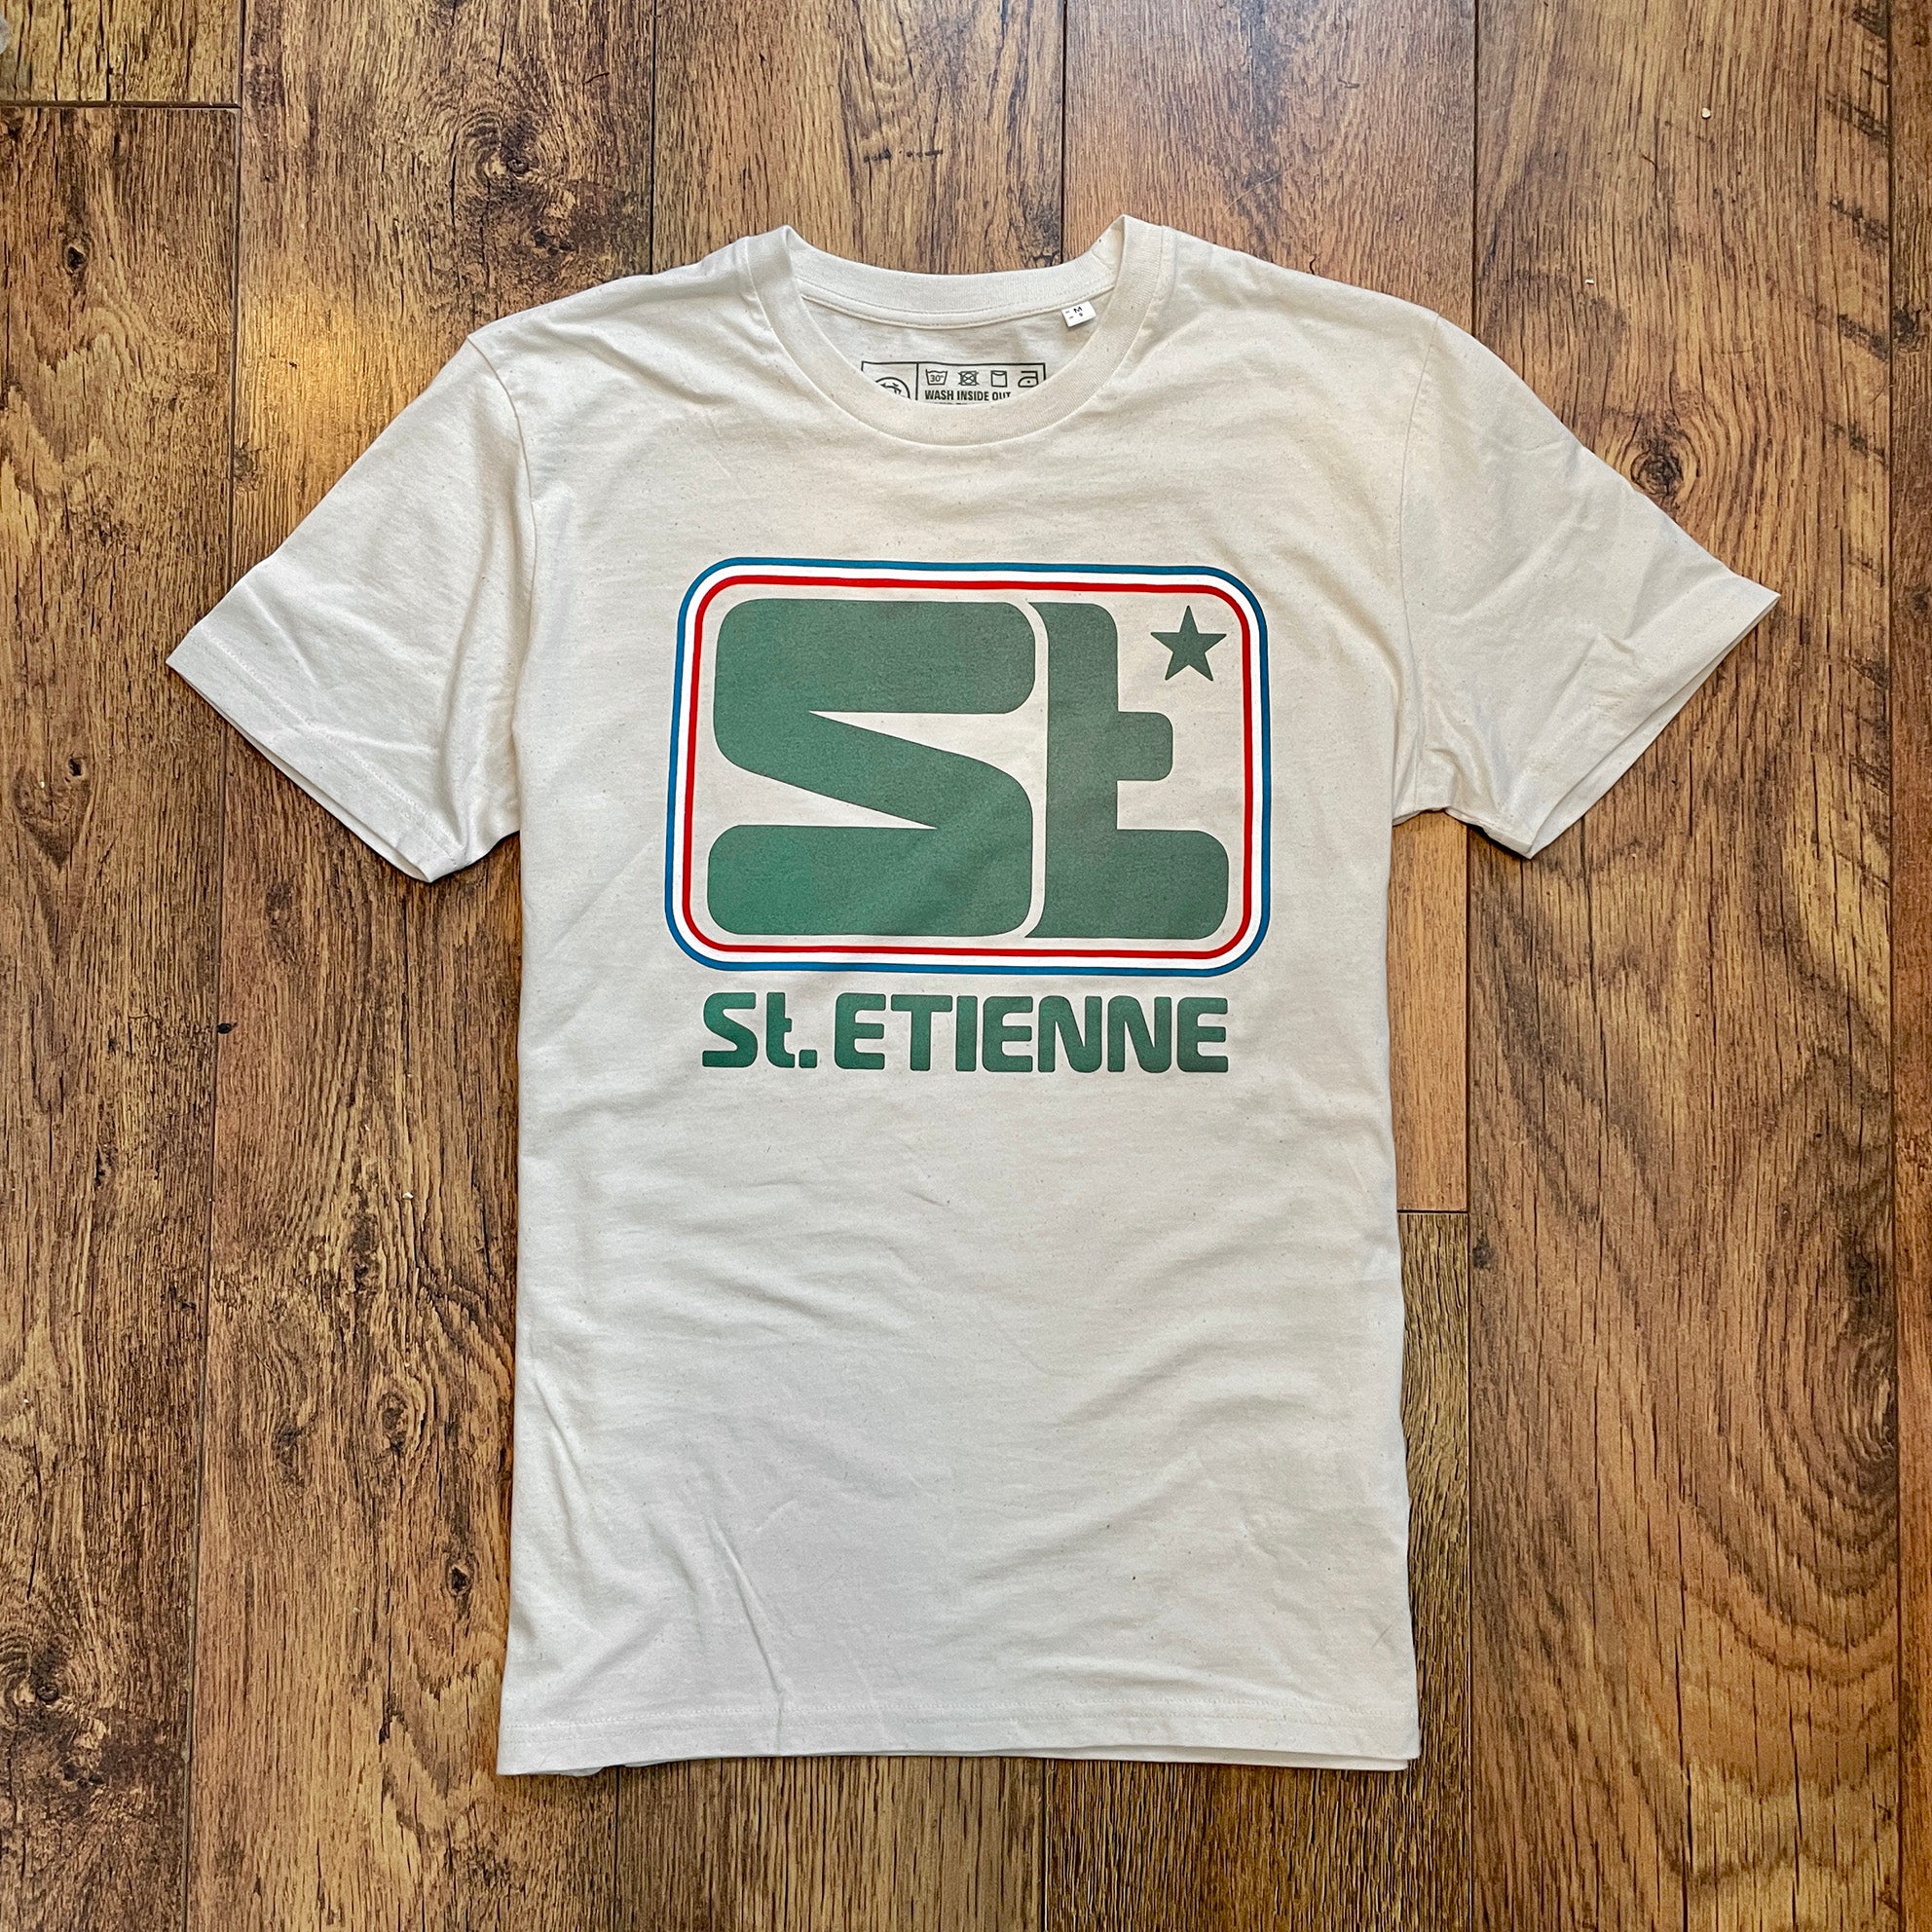 St Etienne football shirt t-shirt